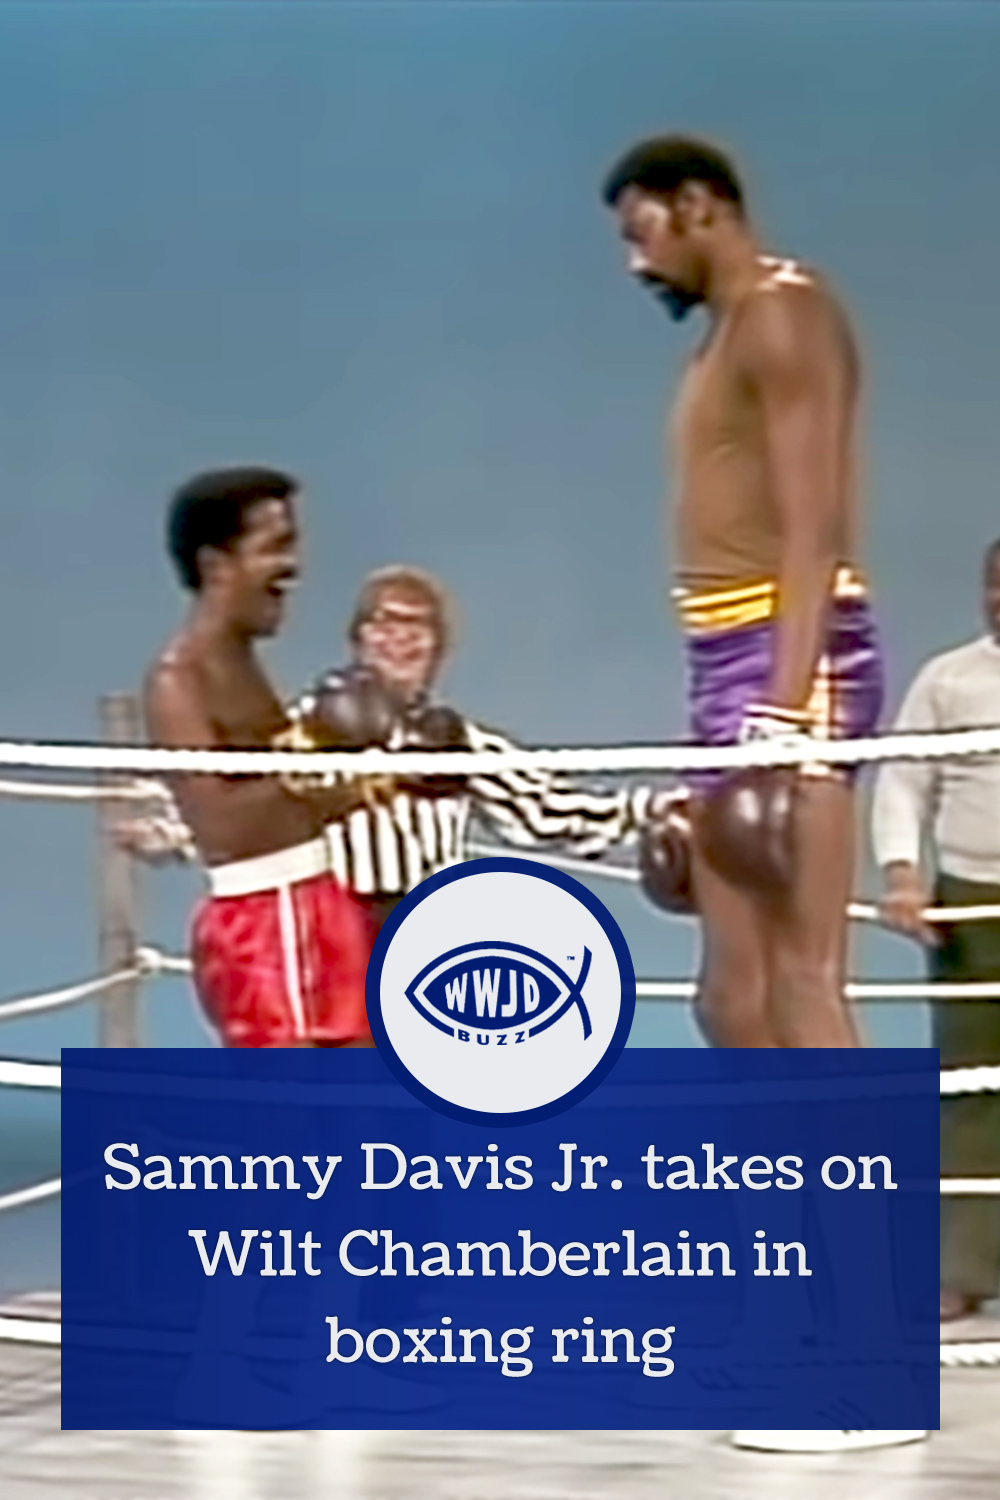 Sammy Davis Jr. takes on Wilt Chamberlain in boxing ring